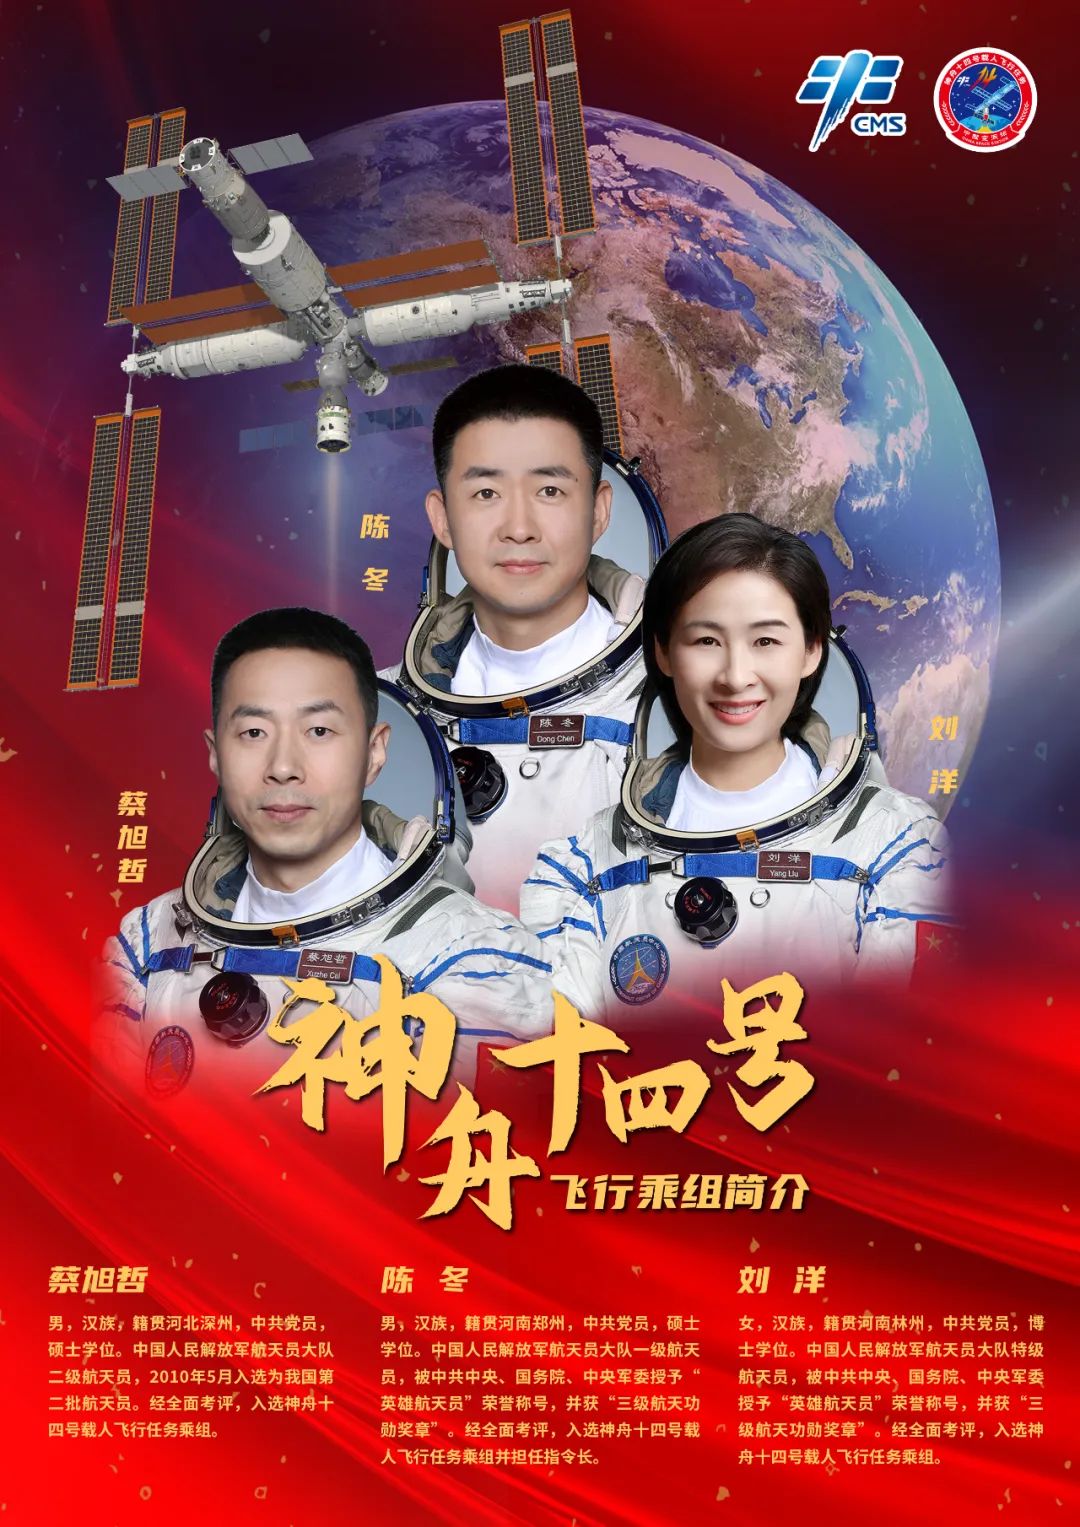 神舟十七号3名航天员顺利进驻中国空间站 - 国际在线移动版